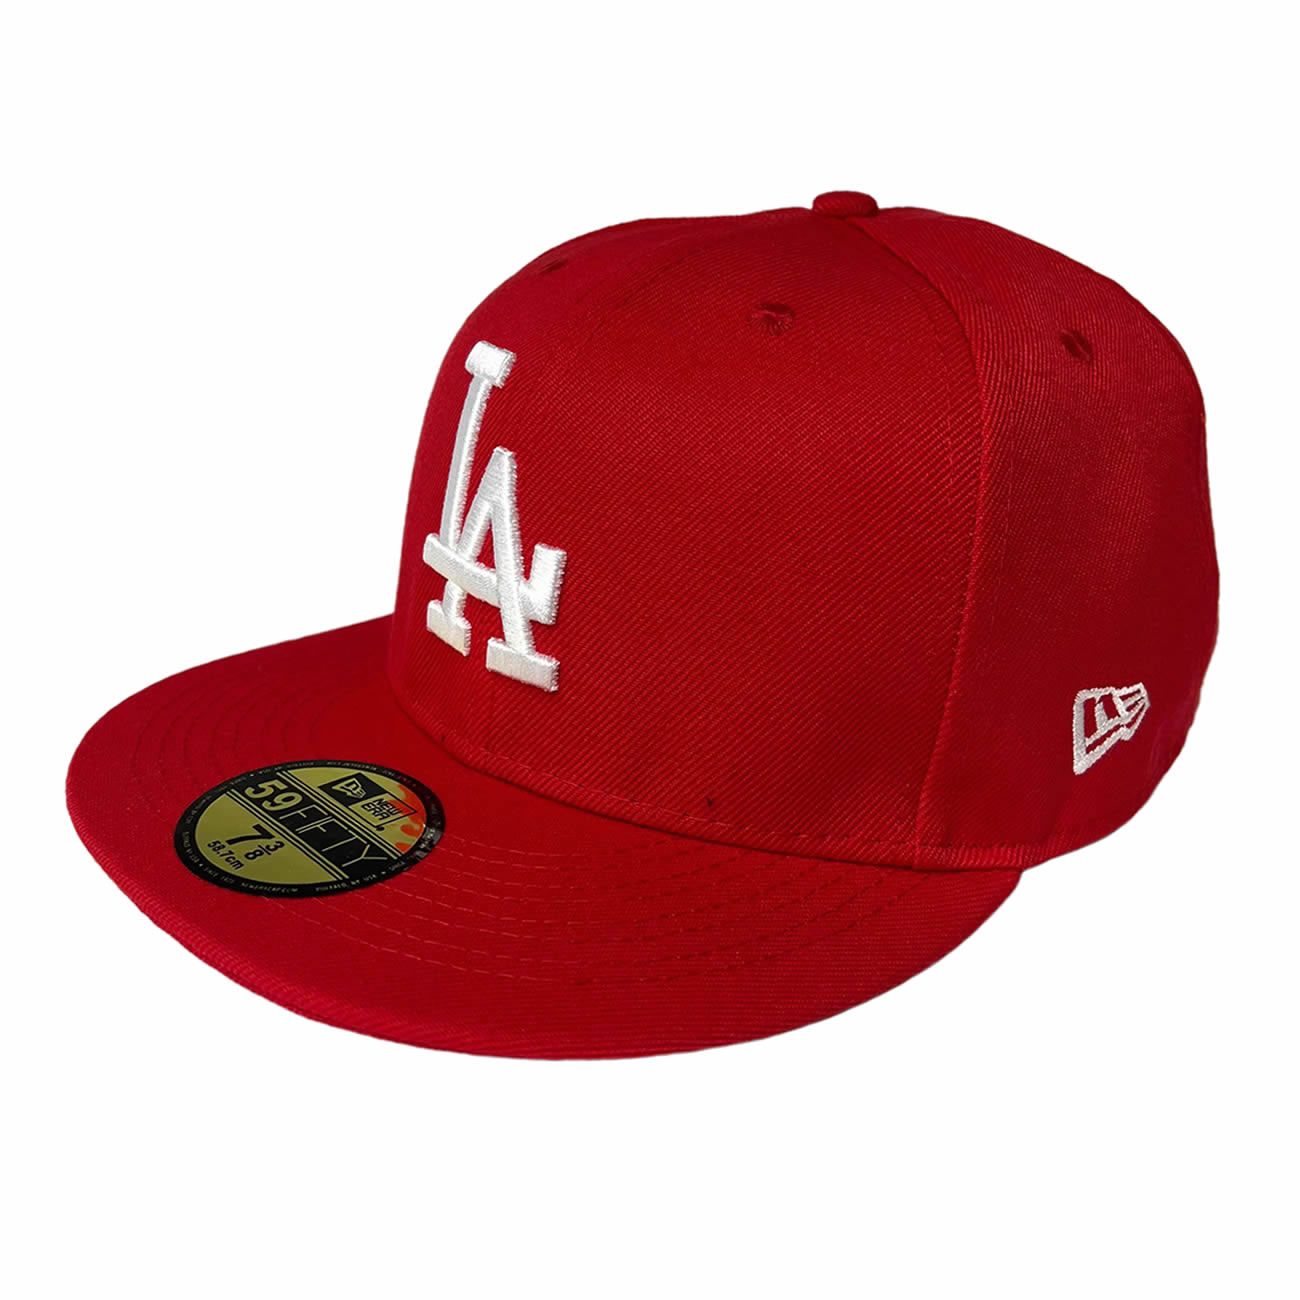 N-E-W-EAR L.A N.Y Fitted Hat 